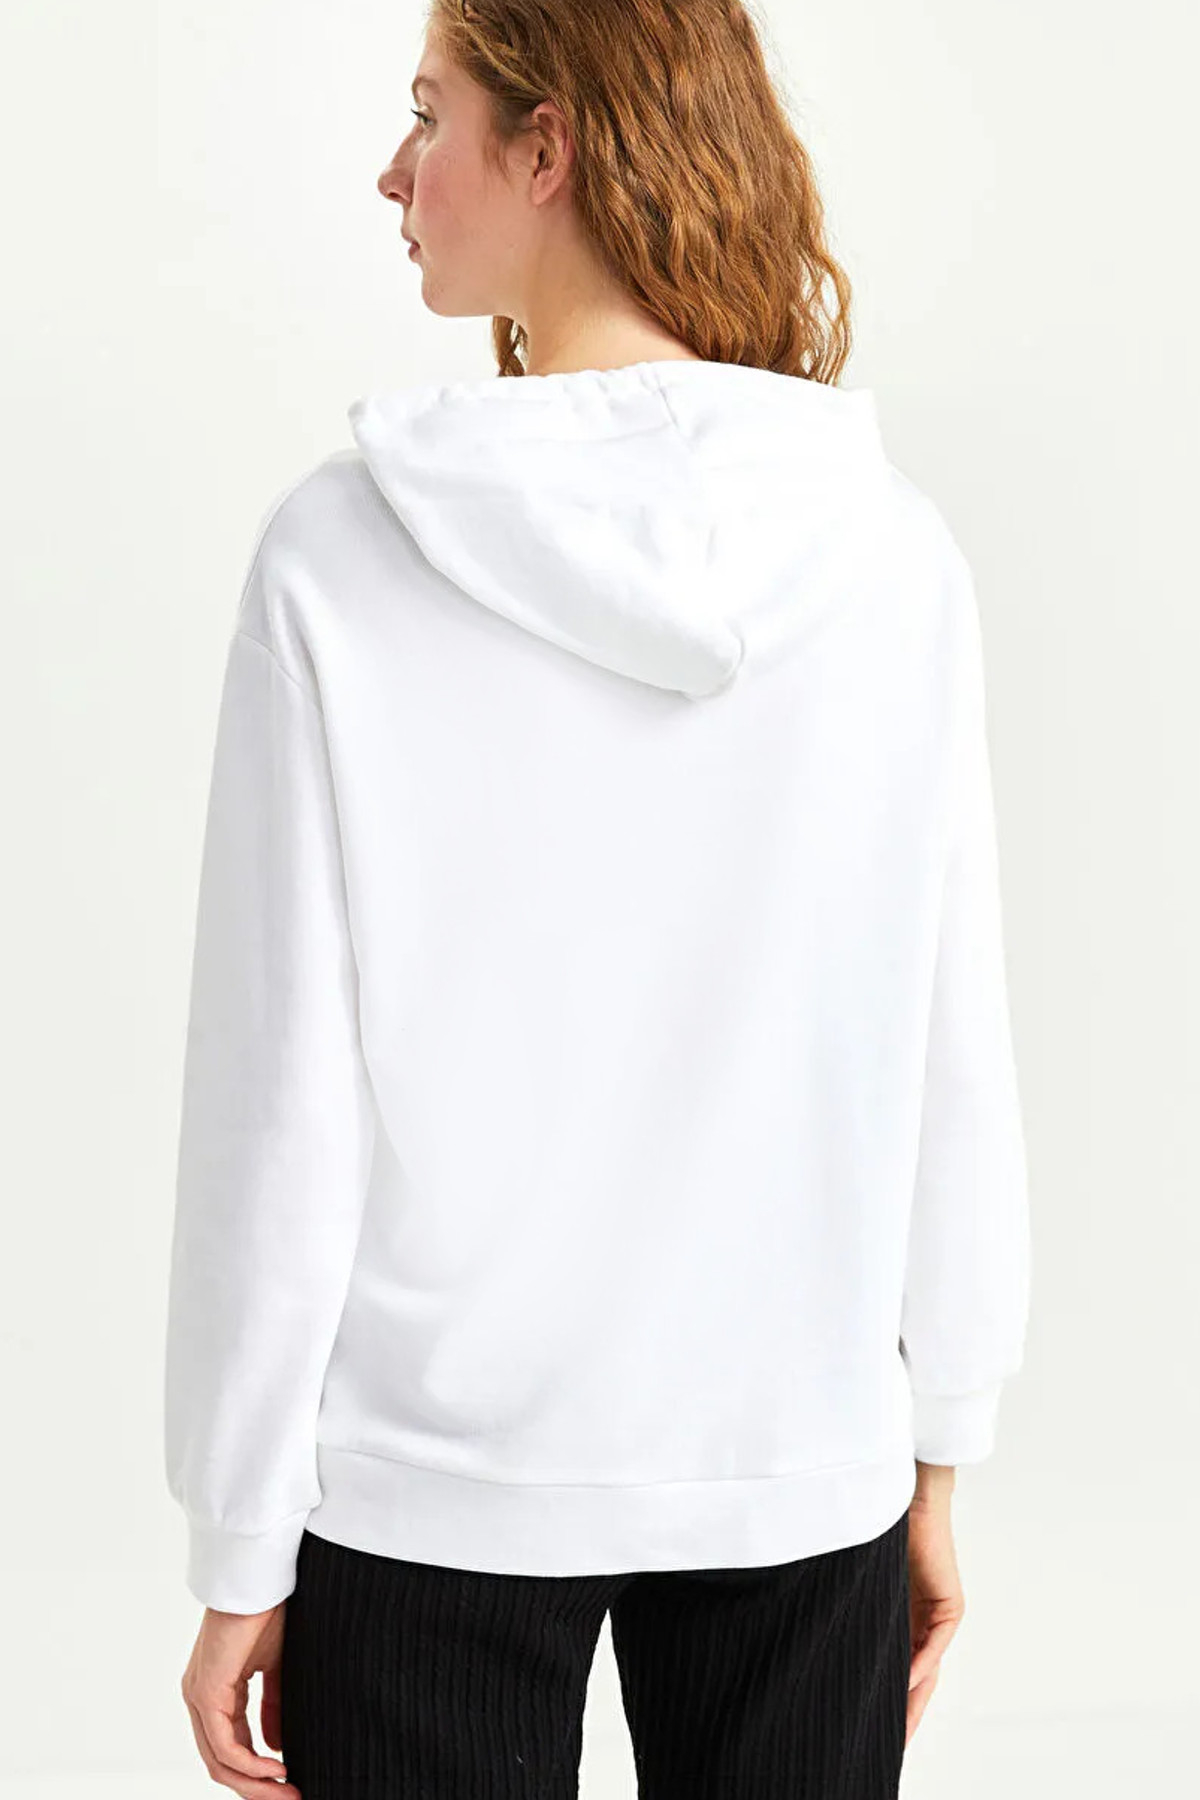 Tokyo 99 Beyaz Kapüşonlu Kadın Sweatshirt